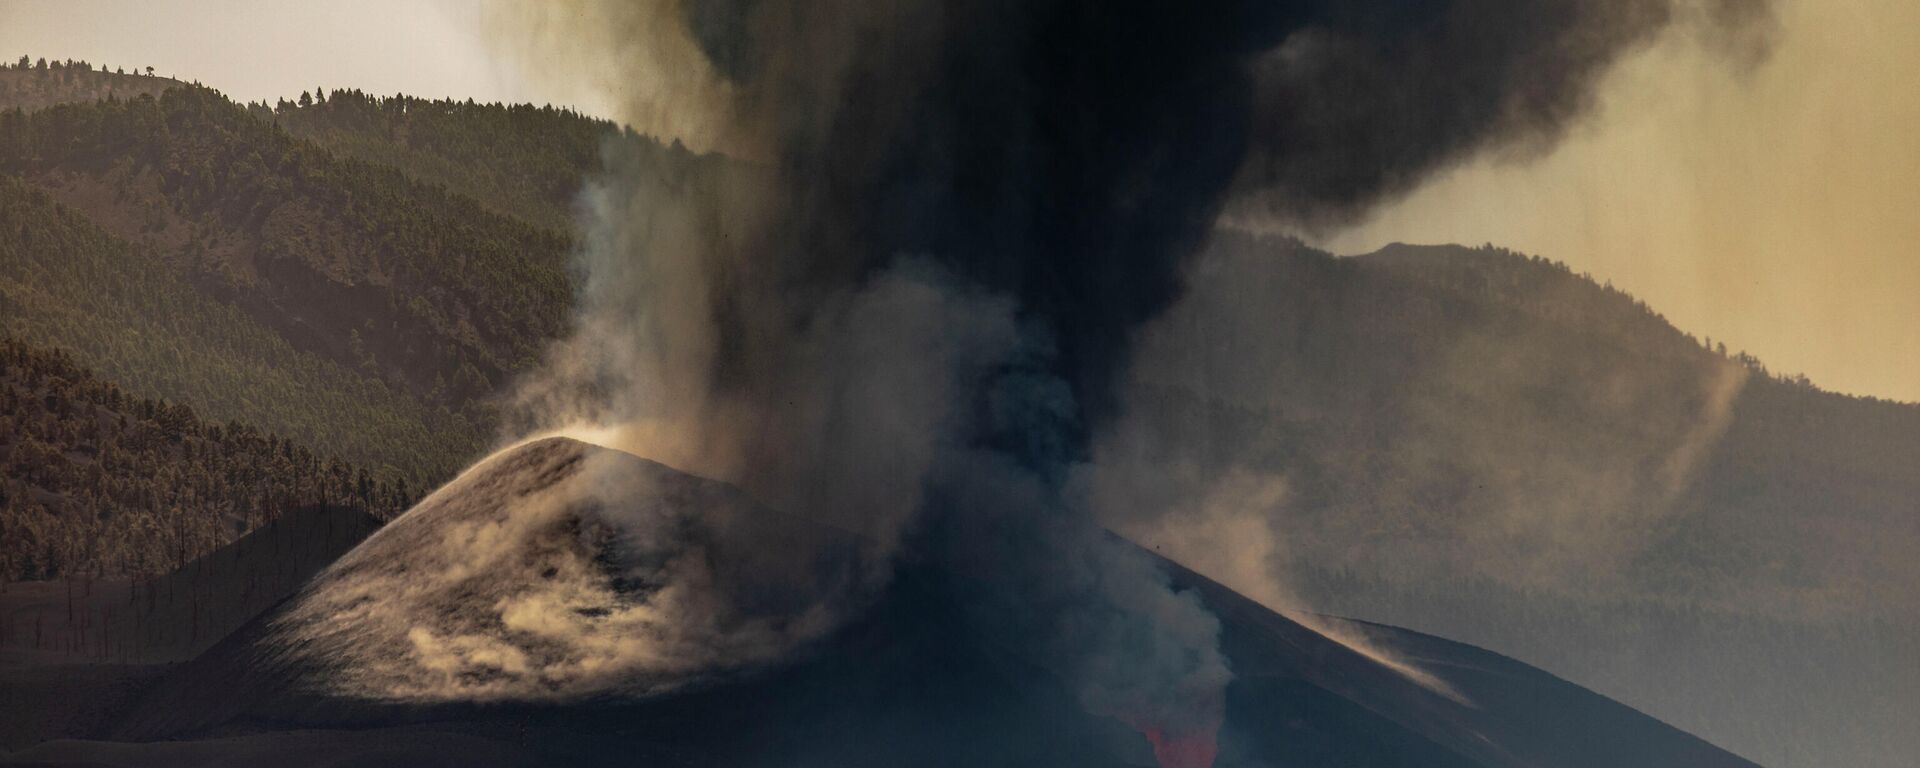 Columna de humo procedente del volcán de Cumbre Vieja (La Palma) - Sputnik Mundo, 1920, 04.10.2021